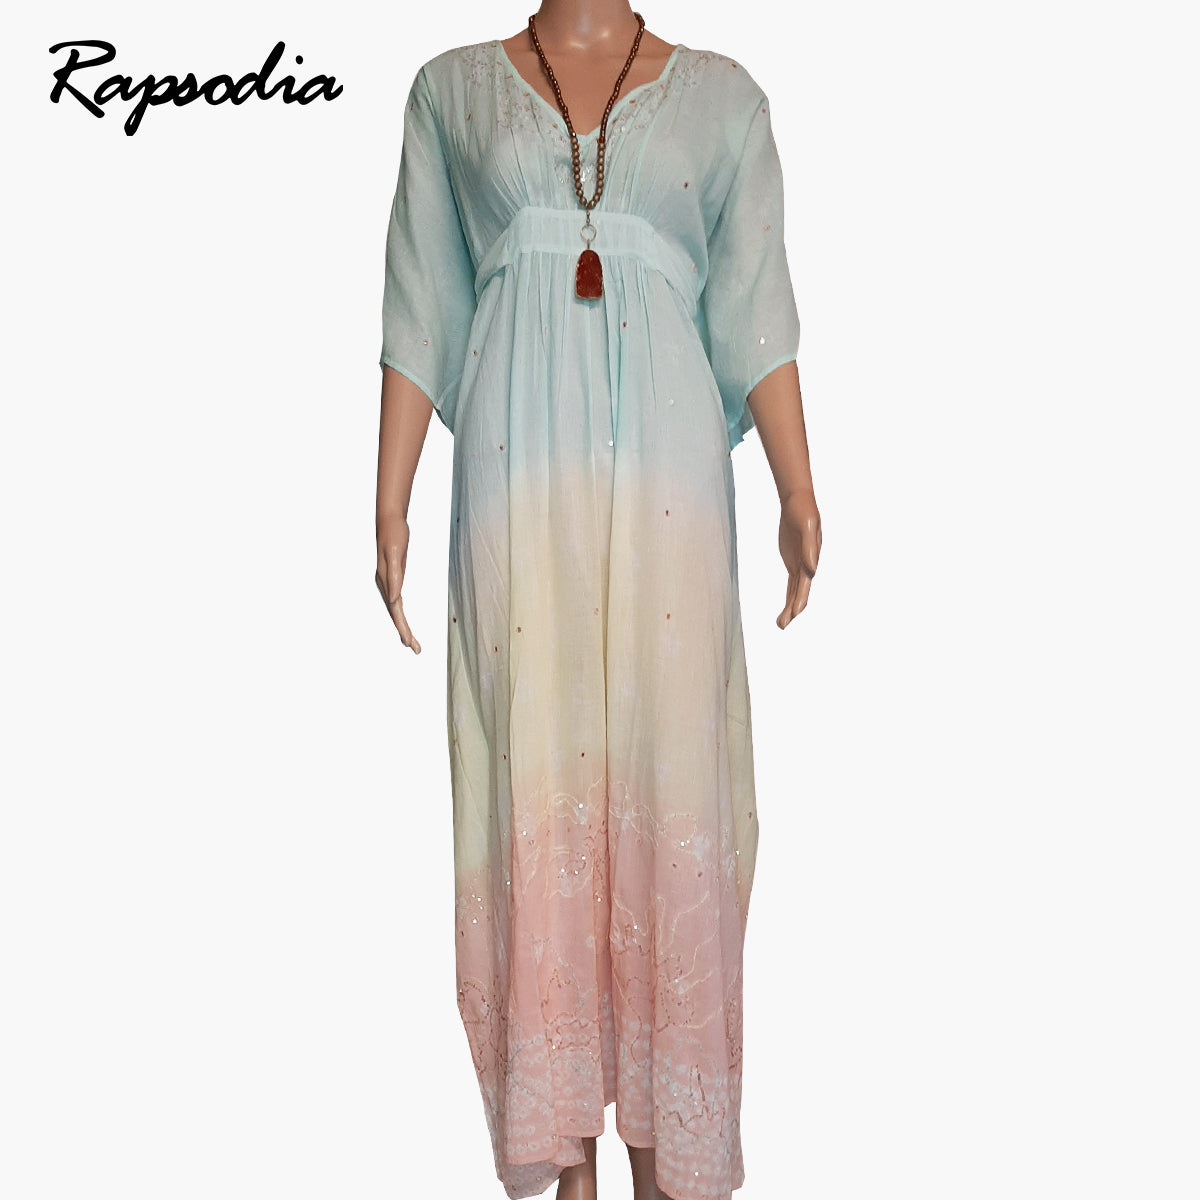 Vestido Rapsodia Tunica Shibori Multicolor